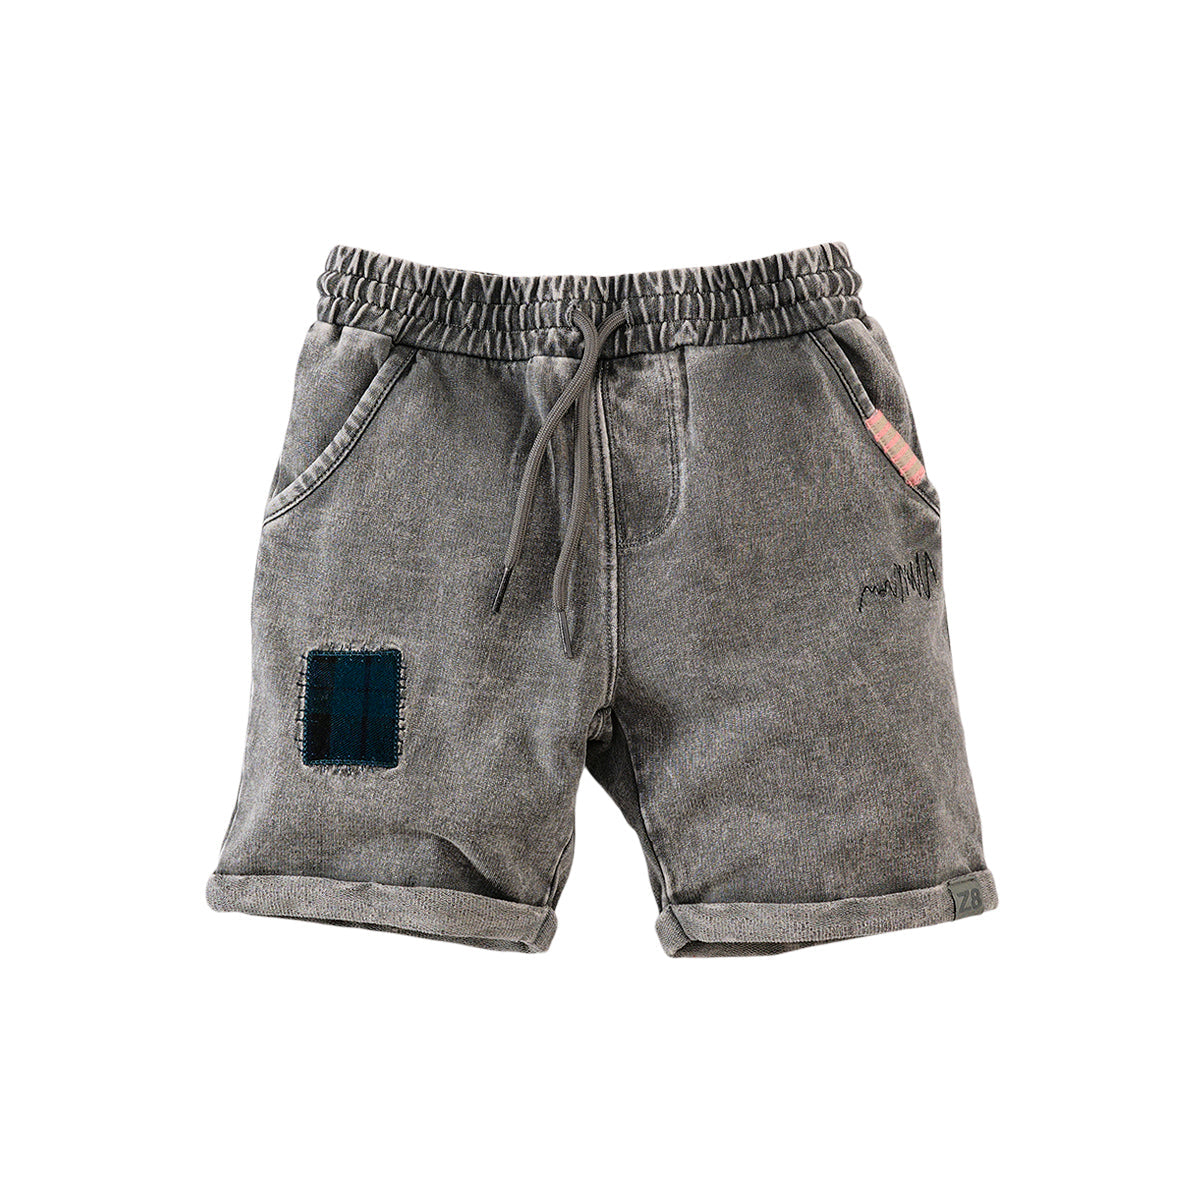 Jongens Sweat Shorts Ferco van Z8 in de kleur Charcoal grey in maat 140.